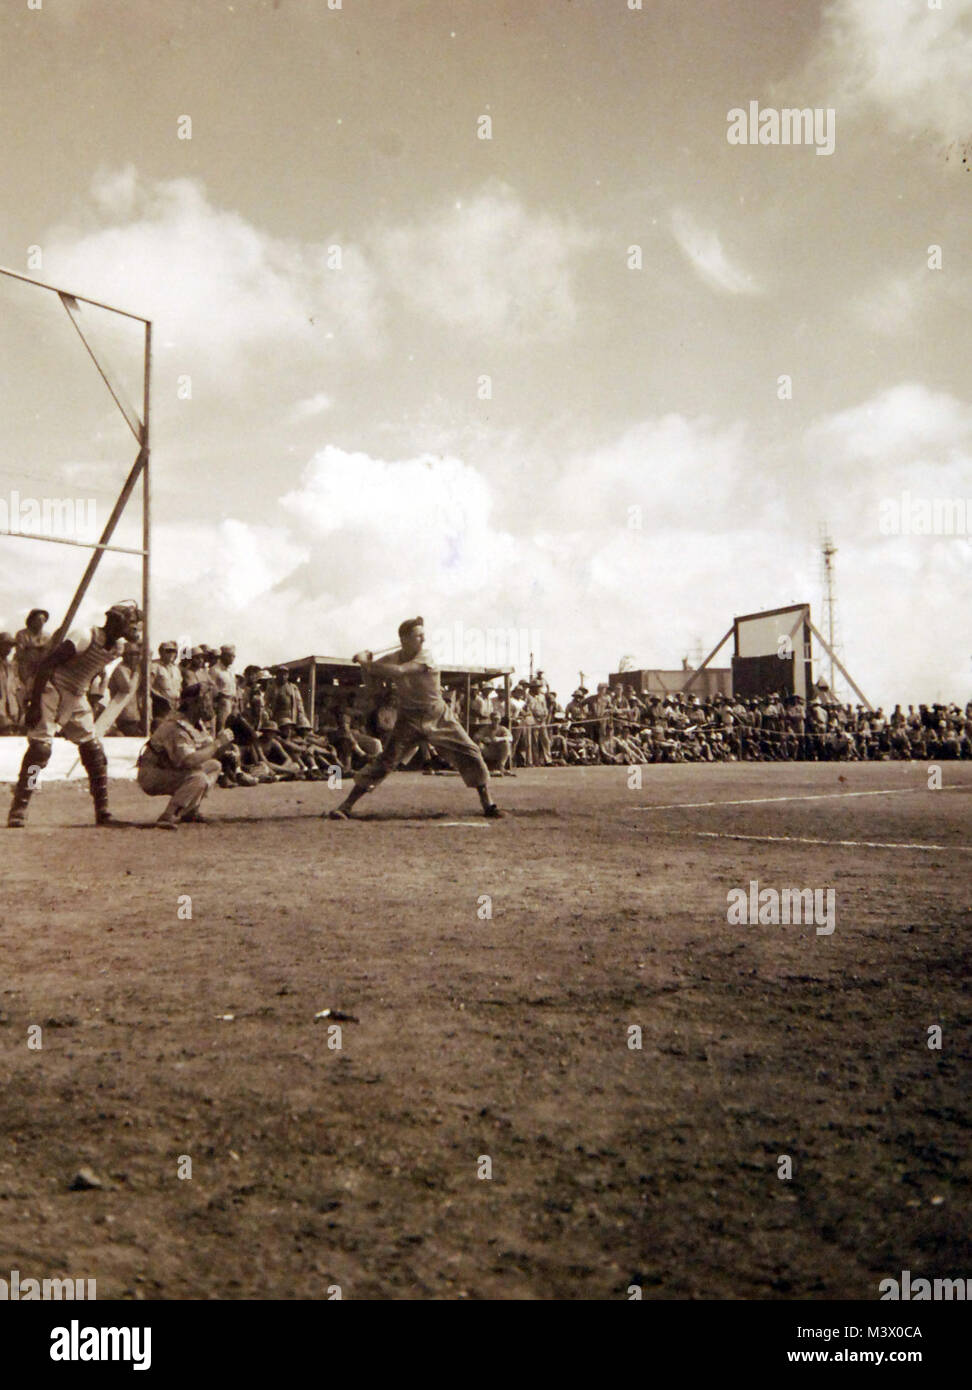 80-G--316405: Naval Air Base, Roi-Namur Insel, 23. November 1944. "All Star Baseball Spiel" gehalten auf der Insel. Offizielle U.S. Navy Foto, jetzt in den Sammlungen der National Archives. (2018/01/31). 80-G--316405 40008536021 o Stockfoto